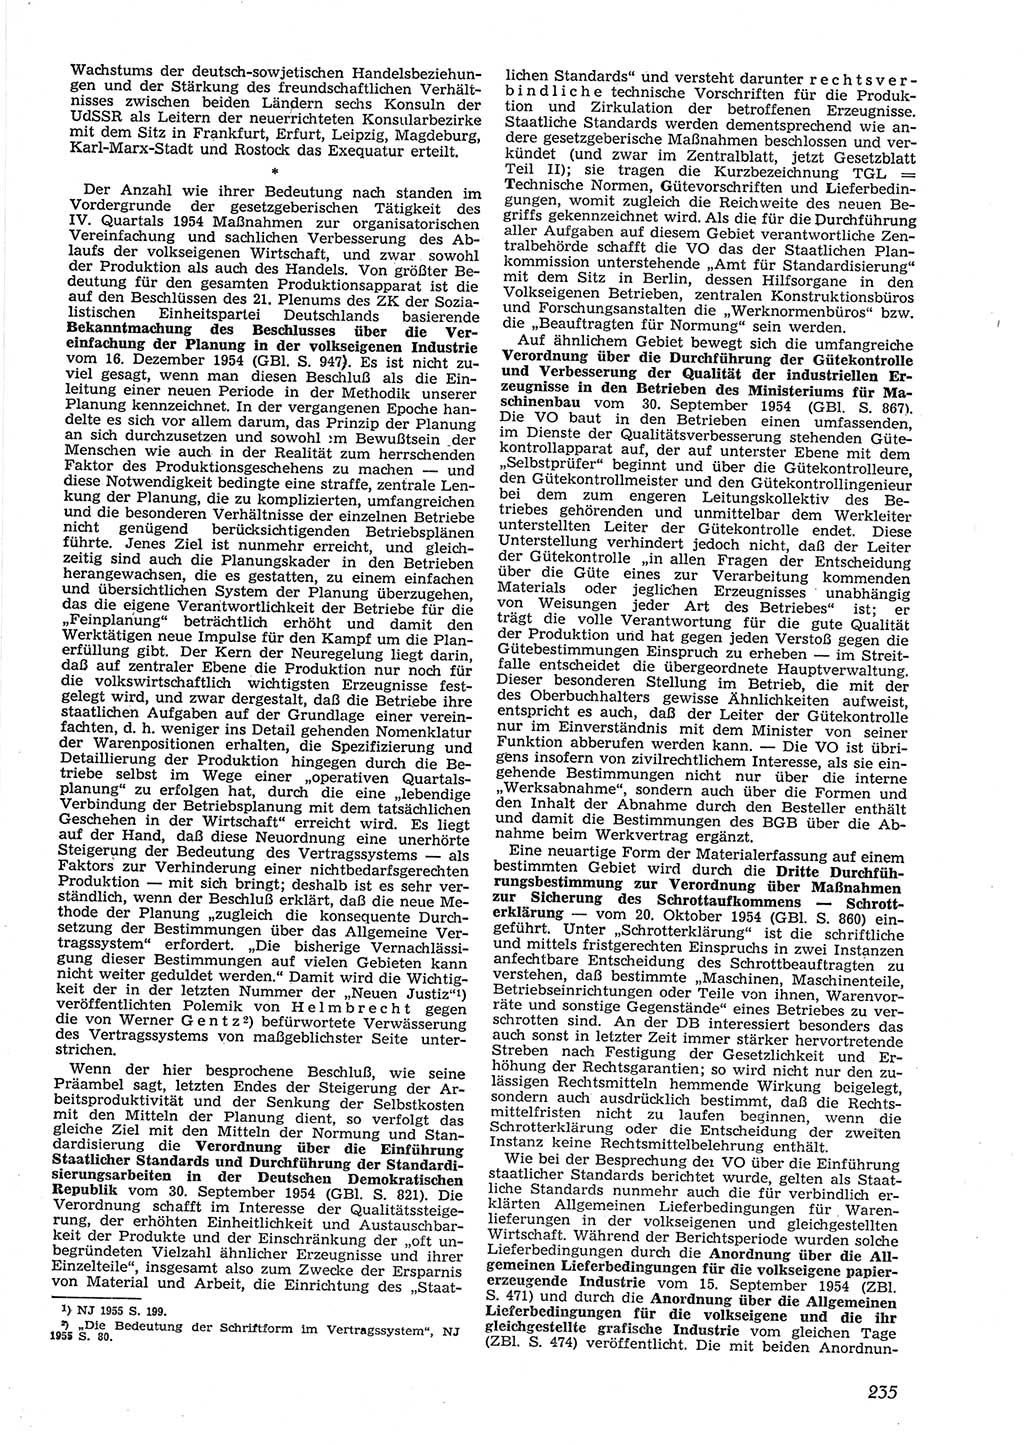 Neue Justiz (NJ), Zeitschrift für Recht und Rechtswissenschaft [Deutsche Demokratische Republik (DDR)], 9. Jahrgang 1955, Seite 235 (NJ DDR 1955, S. 235)